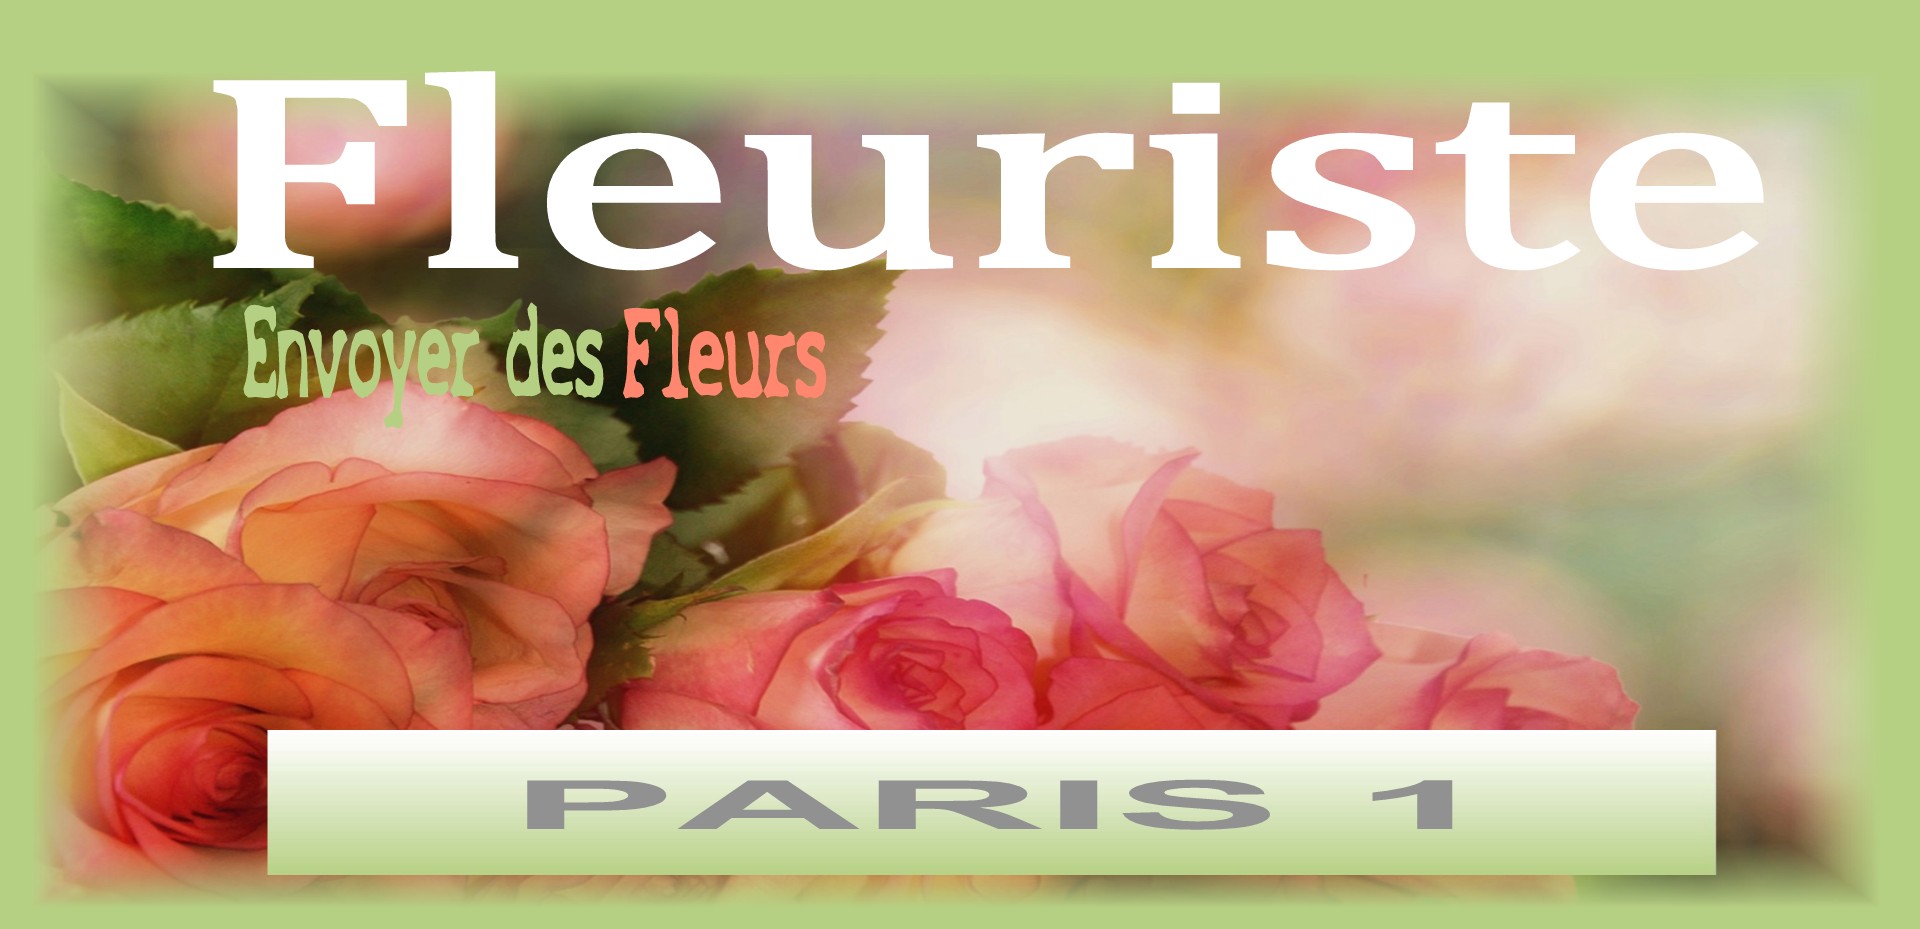 FLEURISTE PARIS 1 - ENVOYER DES FLEURS A PARIS 1